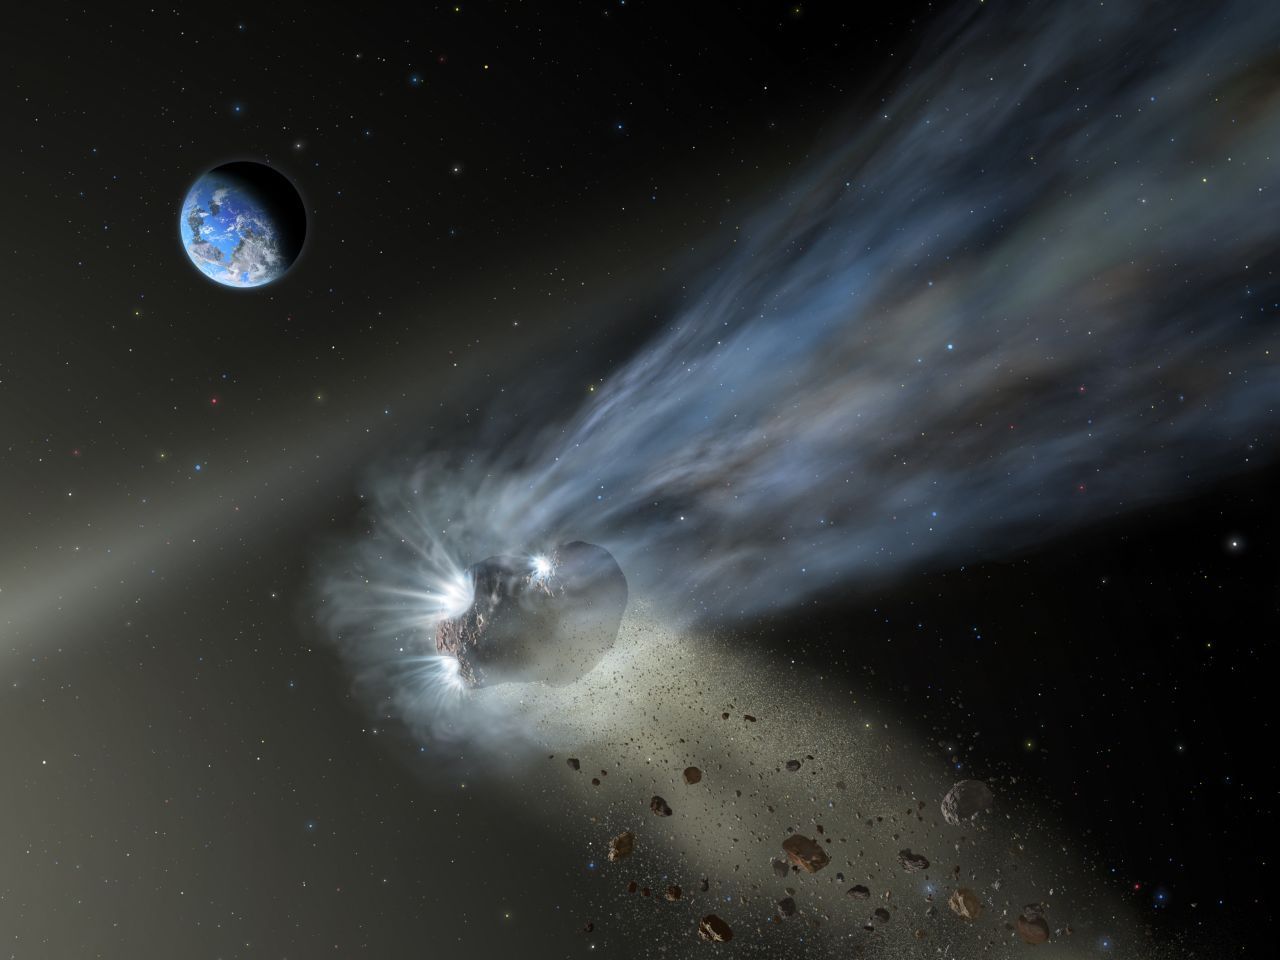 Auf dem Weg um die Sonne hinterlassen die Kometen eine breite Spur aus Trümmerteilen. Wenn die Erde diese Spur kreuzt, verglüht ein Teil davon in der Atmosphäre. Das Resultat ist ein Meteorschauer.